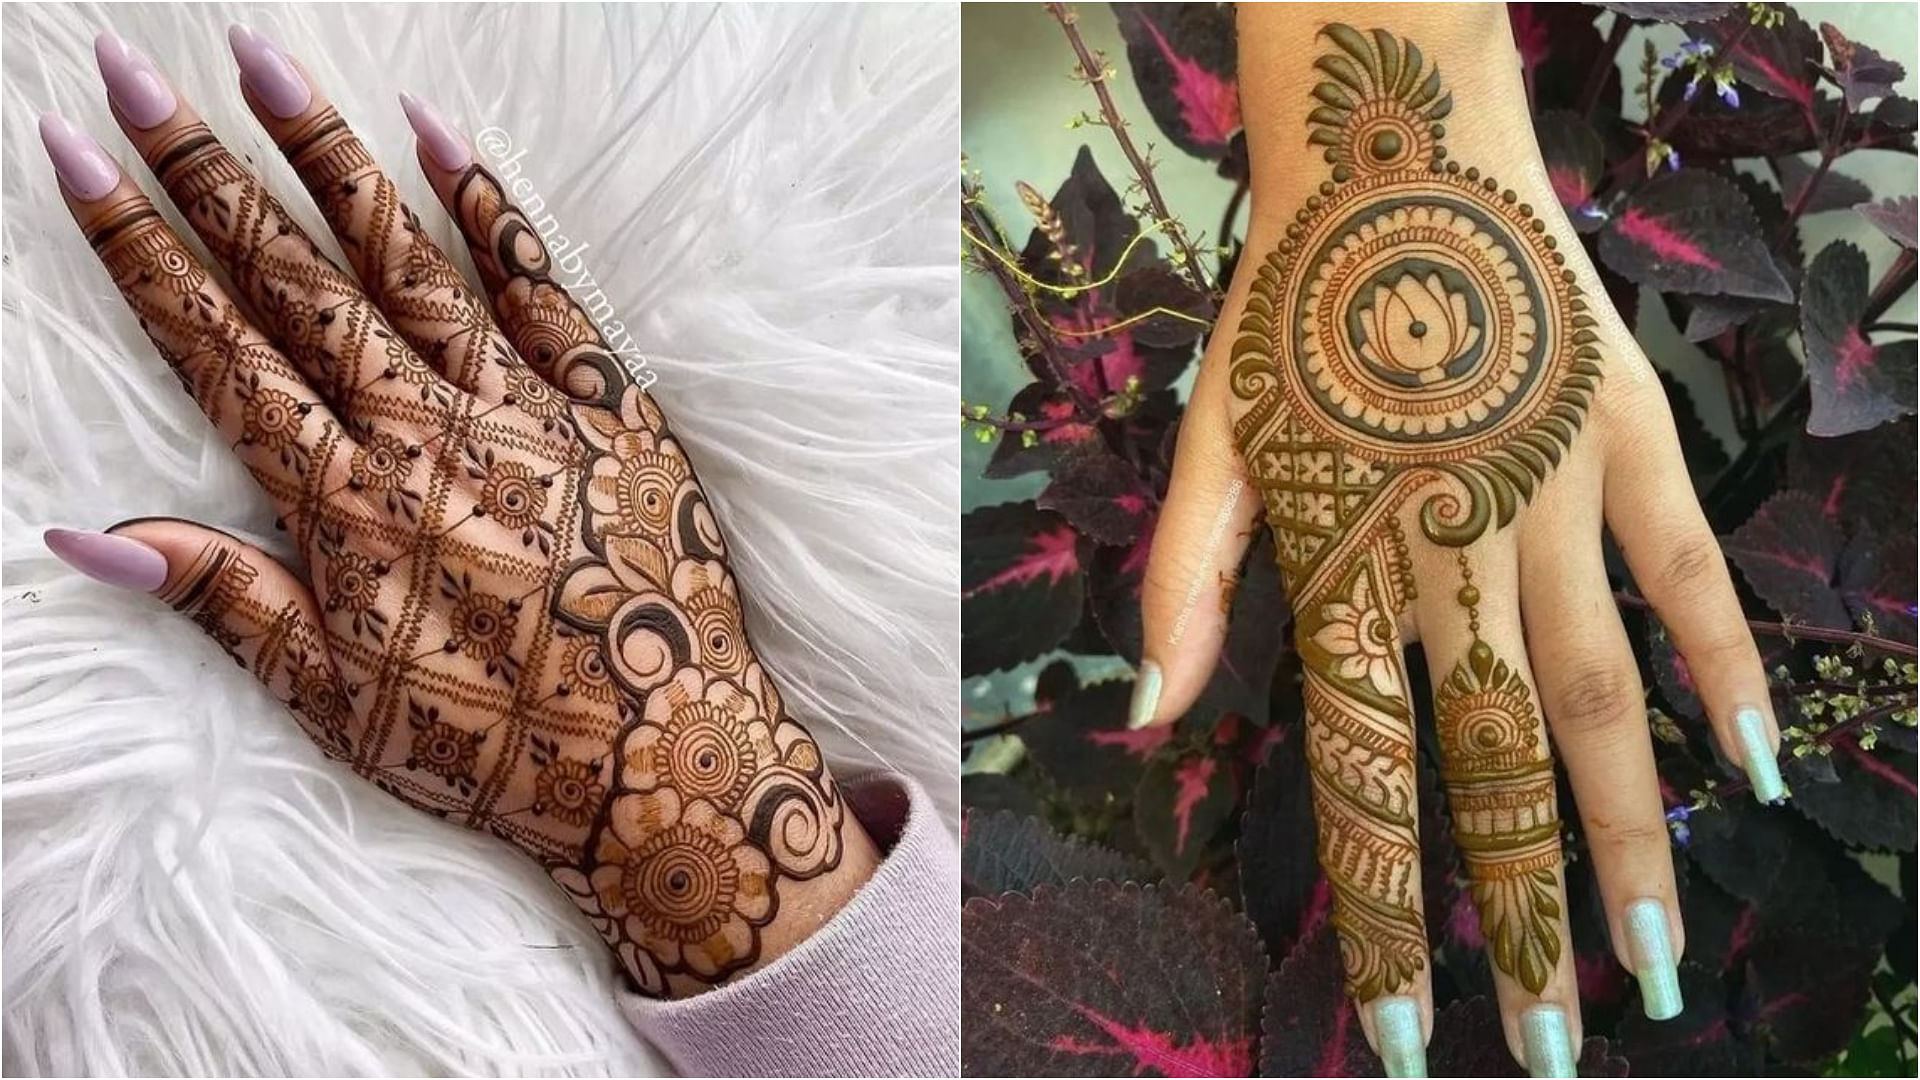 Easy Mehndi Design Try This Round Circle Mehndi On This Wedding Season |  Gol Tikki Mehndi Designs: बेहद प्यारी और बहुत खूबसूरत लगती हैं गोल टिक्की  मेहंदी, देखें इसके ट्रेंडी और स्टाइलिश